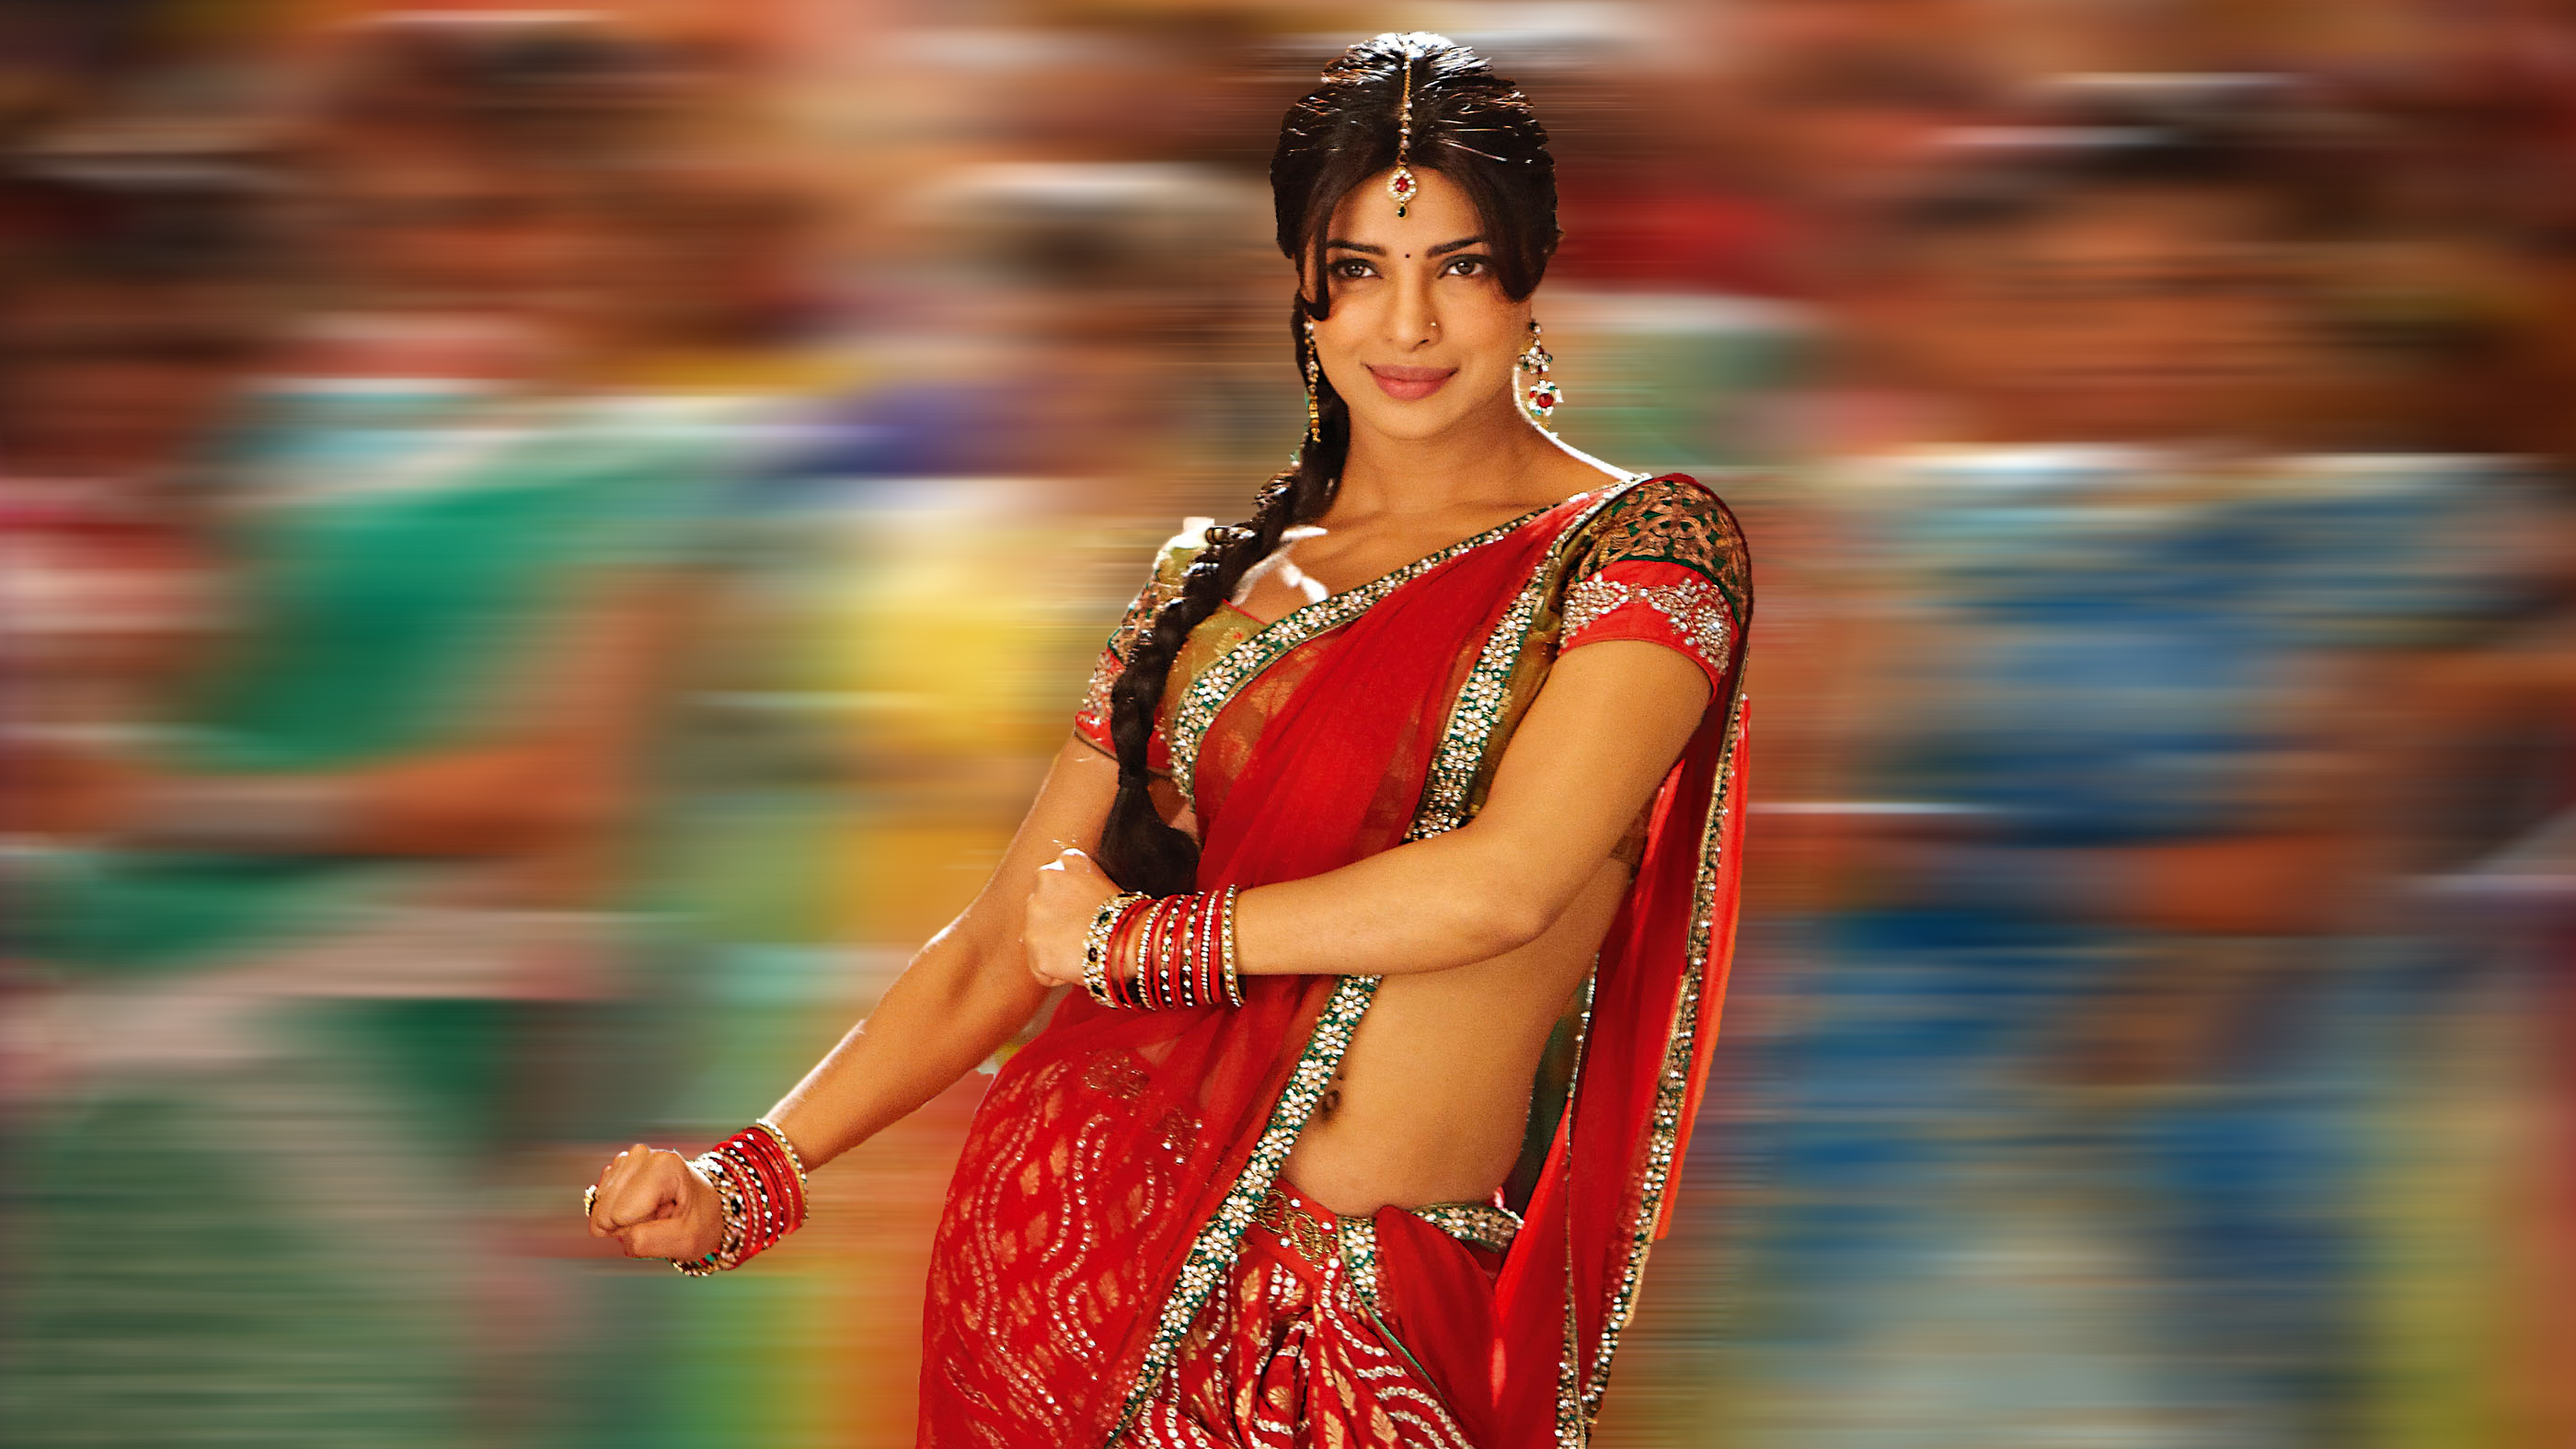 actrice bollywood en saree hd fonds d'écran,sari,abdomen,mannequin,tronc,vêtements de cérémonie